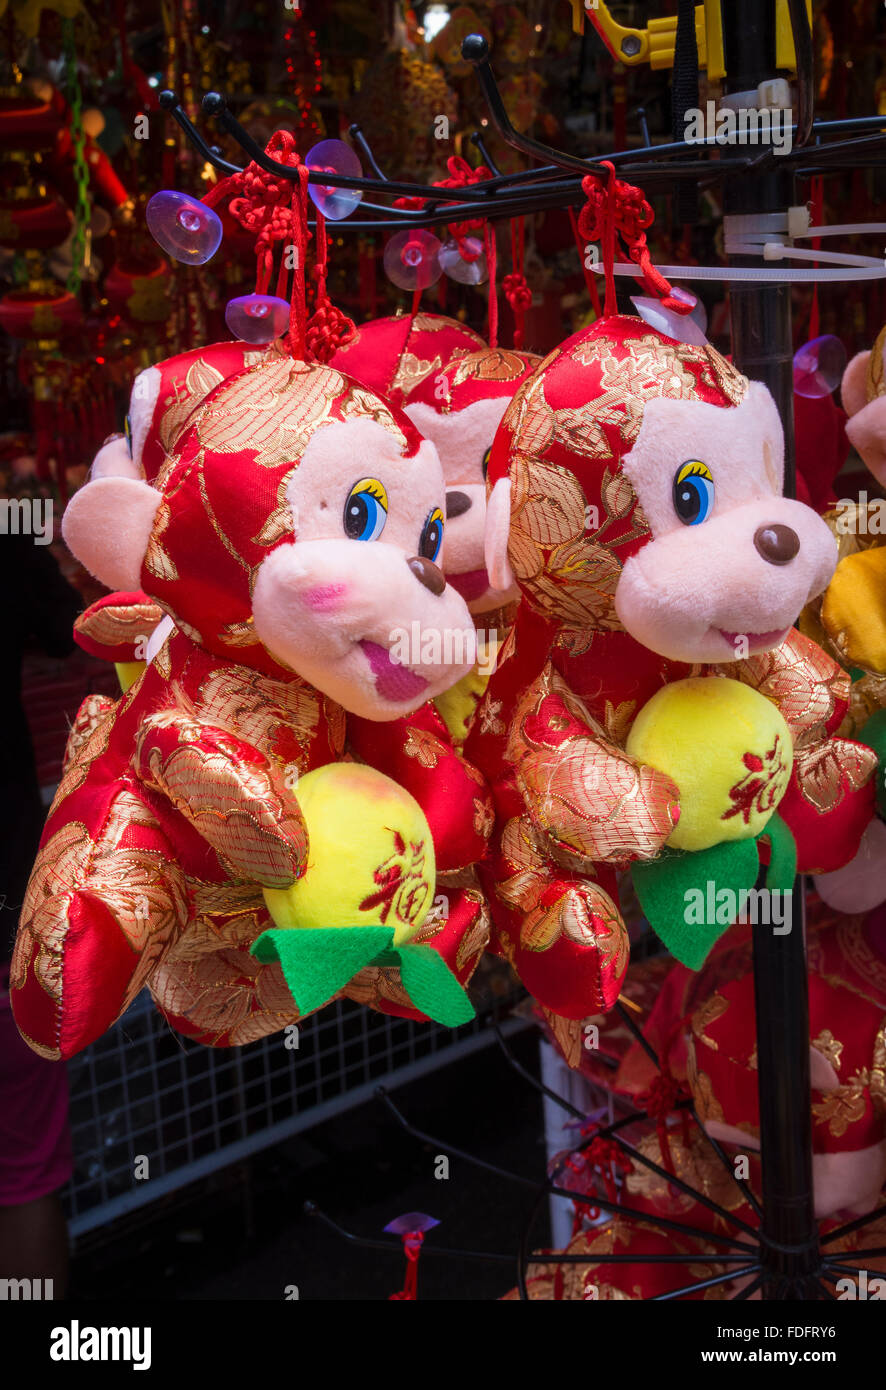 Giocattolo morbido Monkey decorazioni per il nuovo anno cinese della scimmia 2016, a Chinatown Street Market, Chinatown, Singapore Foto Stock